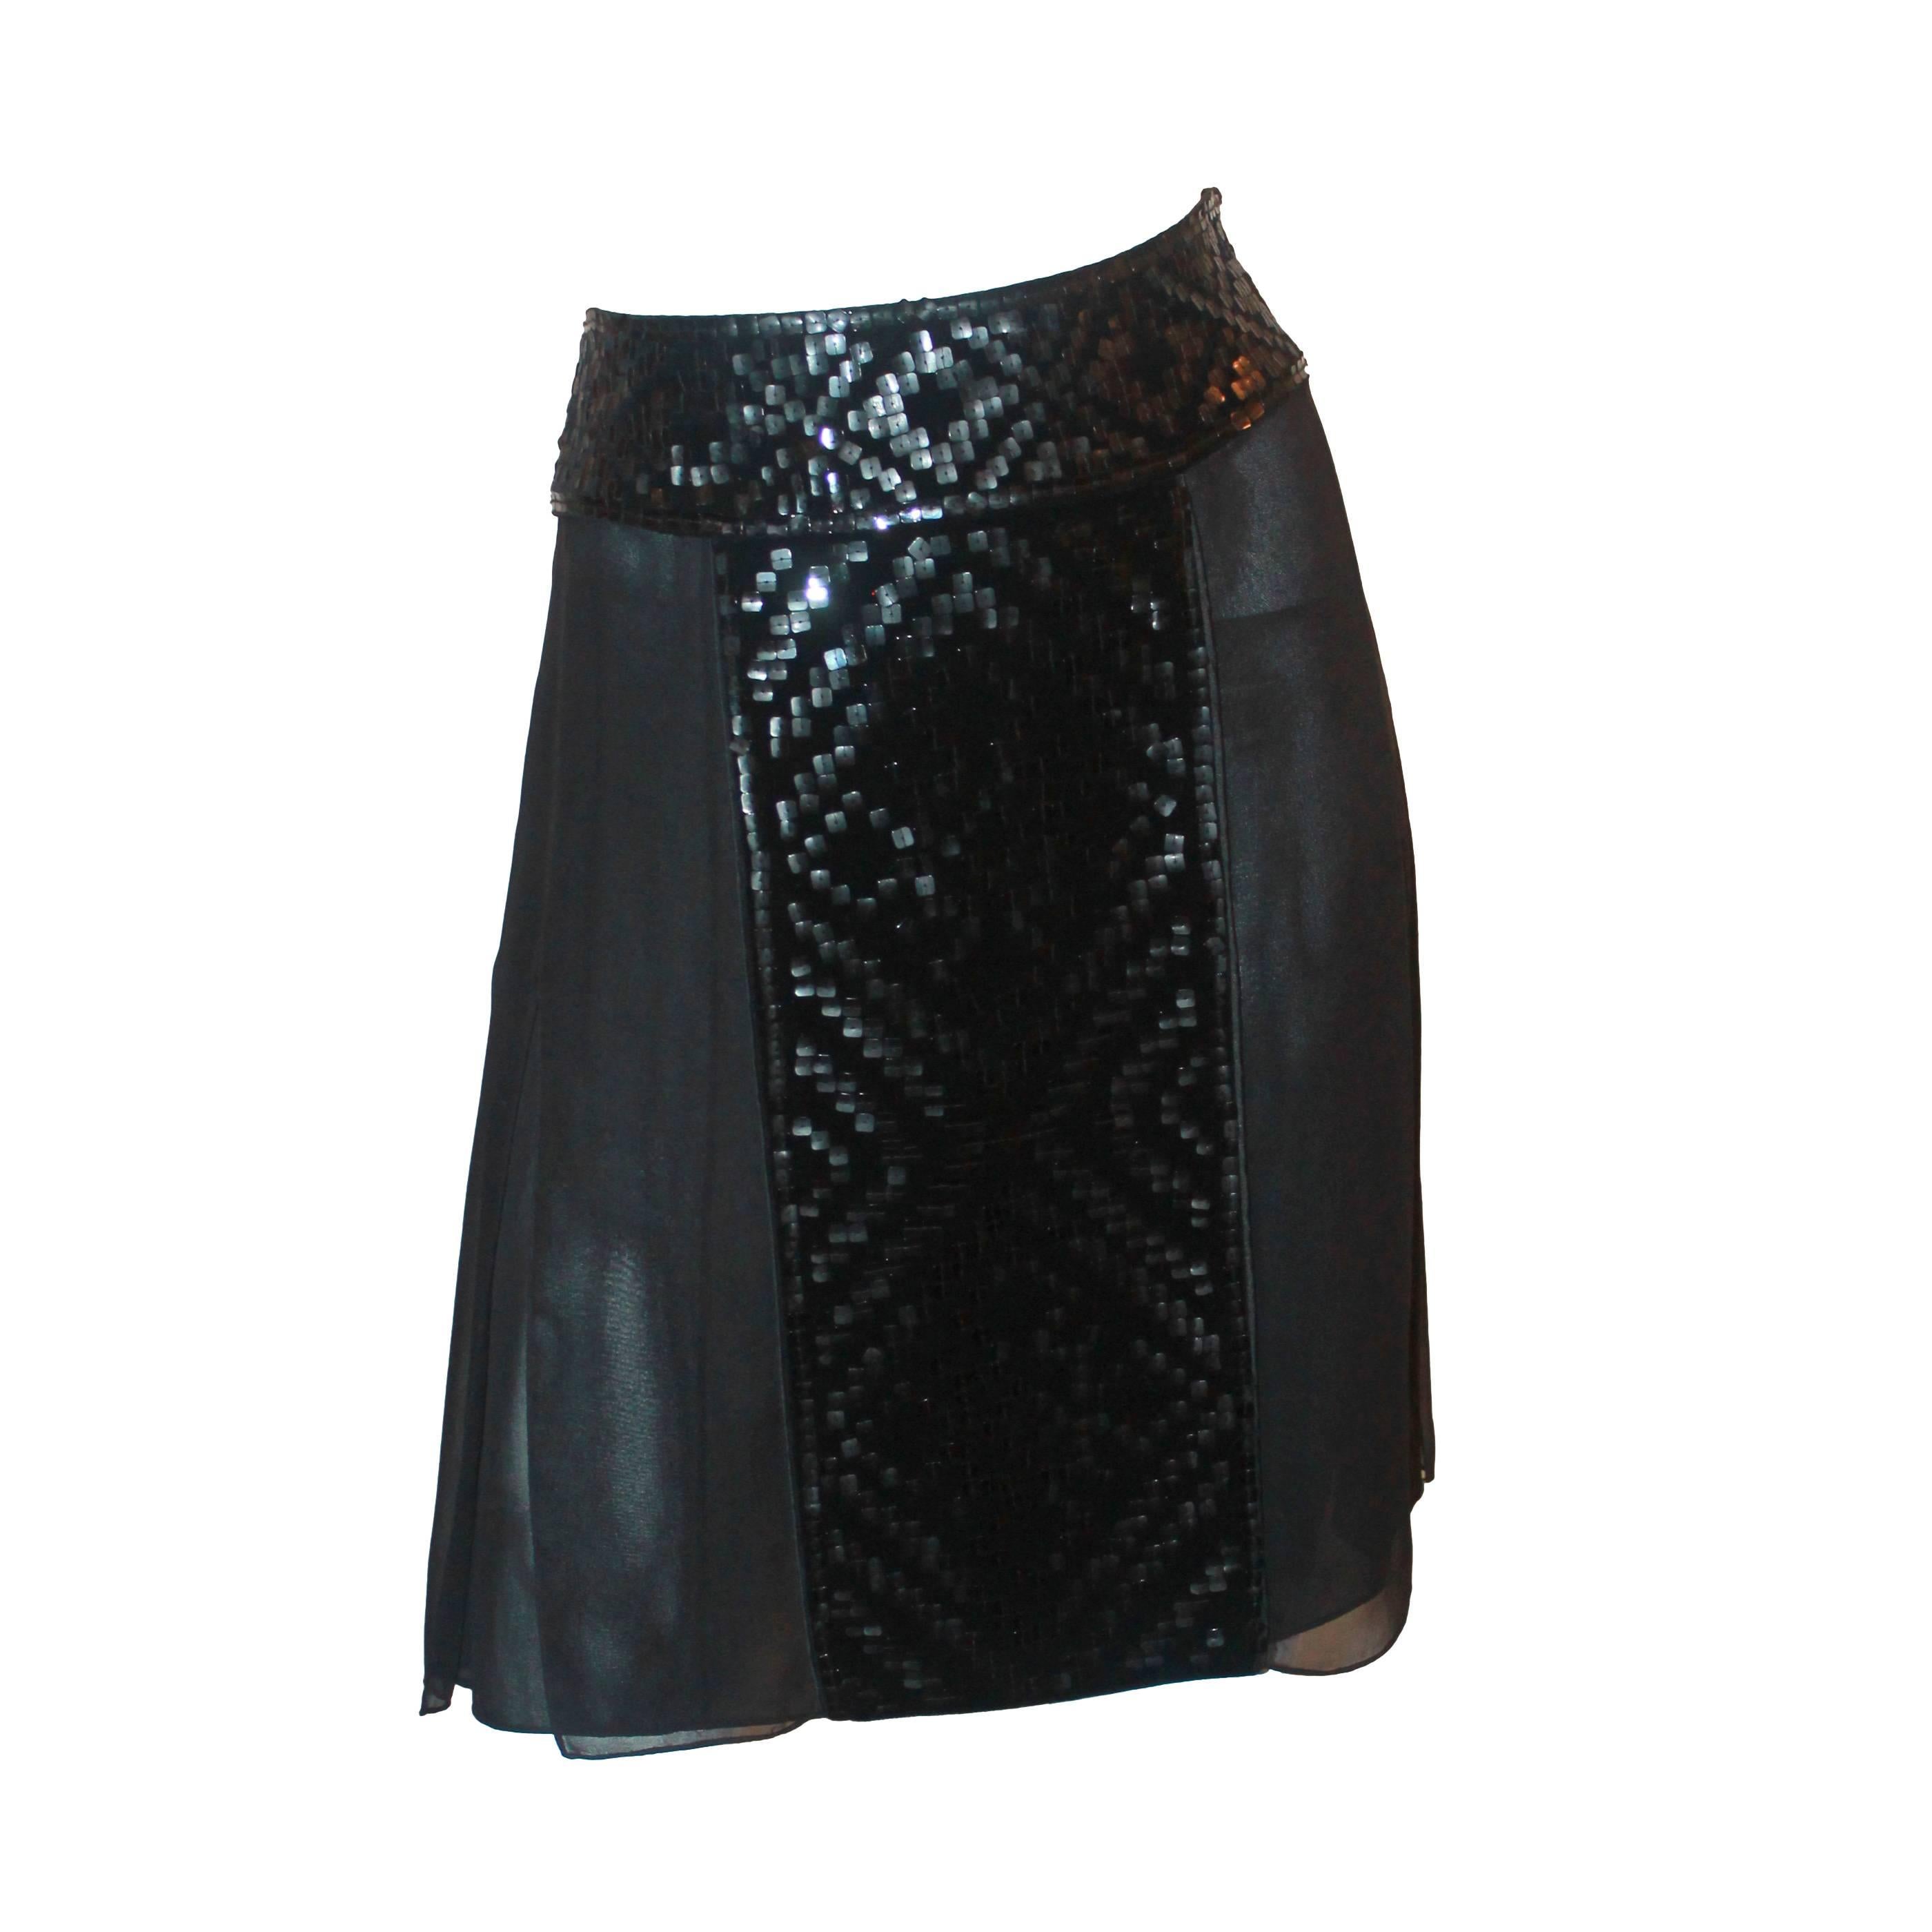 J. Mendel Black Silk Skirt with Sequin Panels - 8